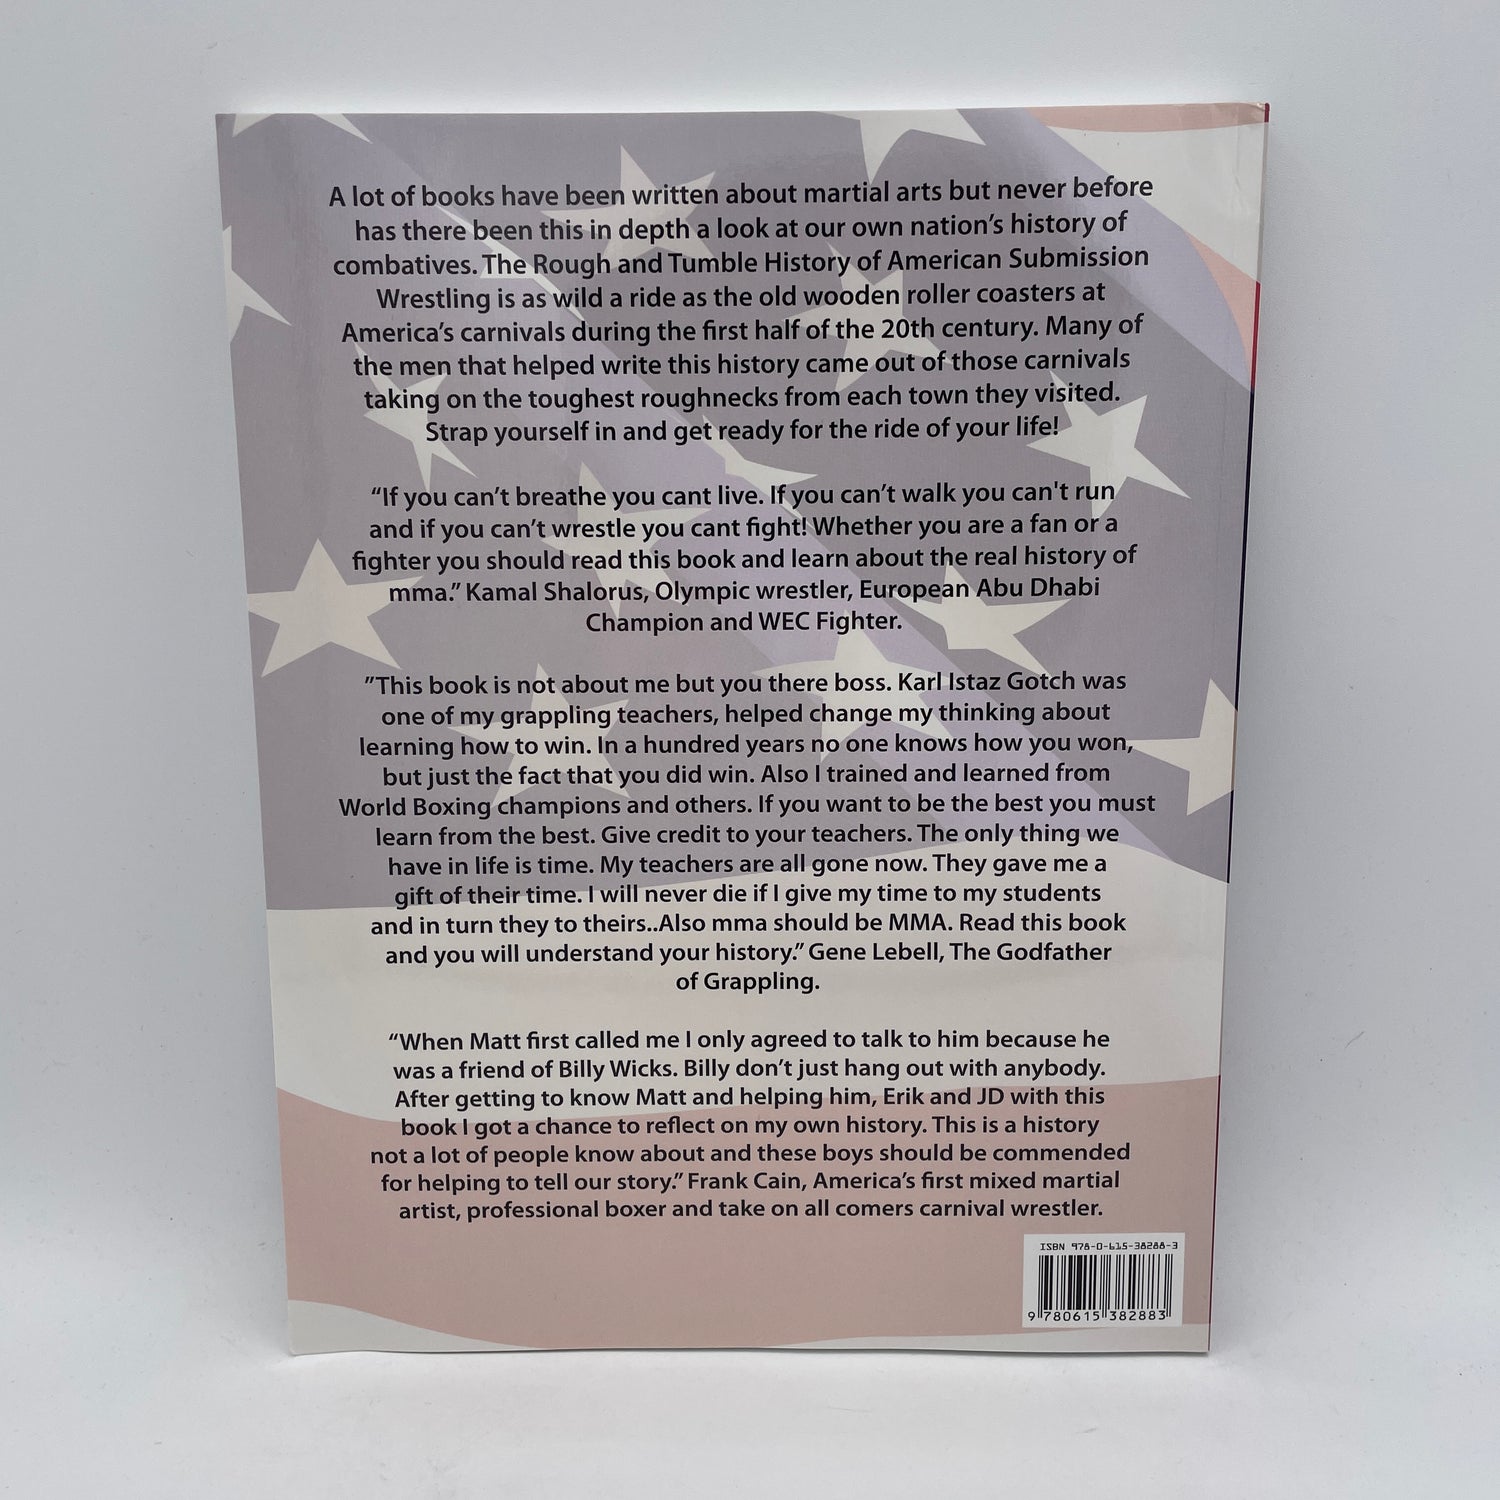 Rough and Tumble: libro de la historia de la lucha de sumisión estadounidense de Erik Paulson 